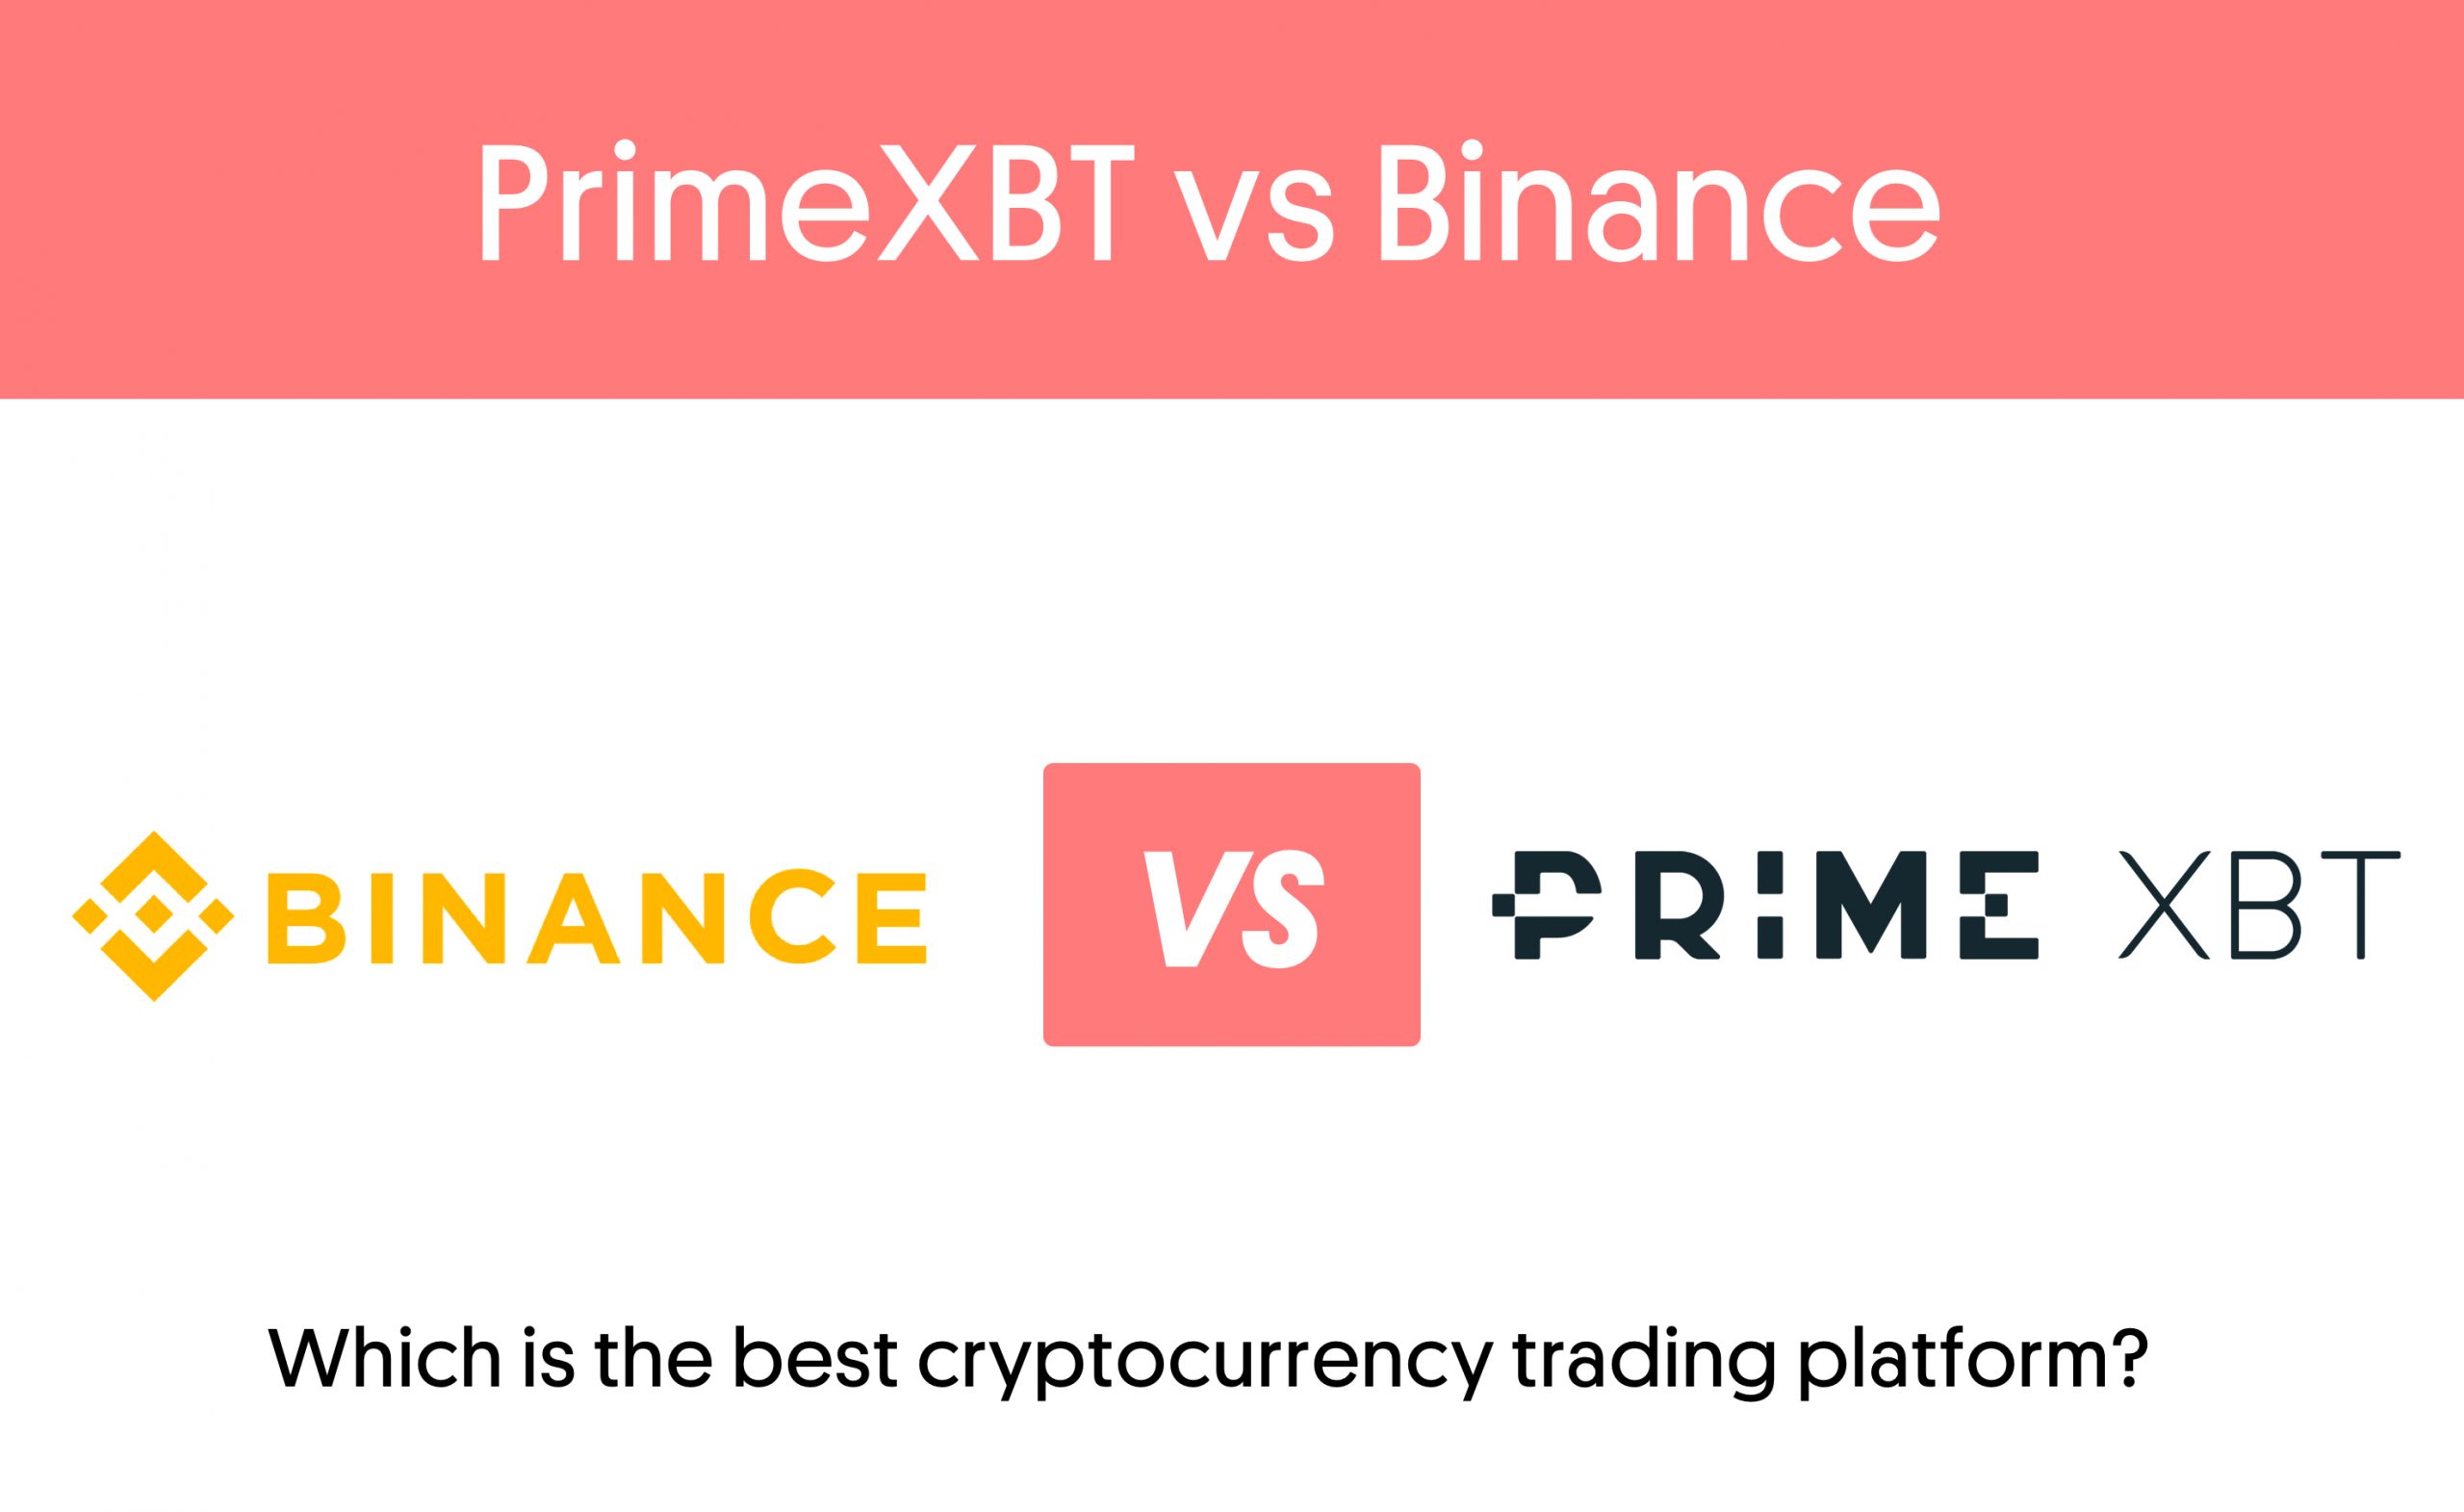 PrimeXBT versus Binance